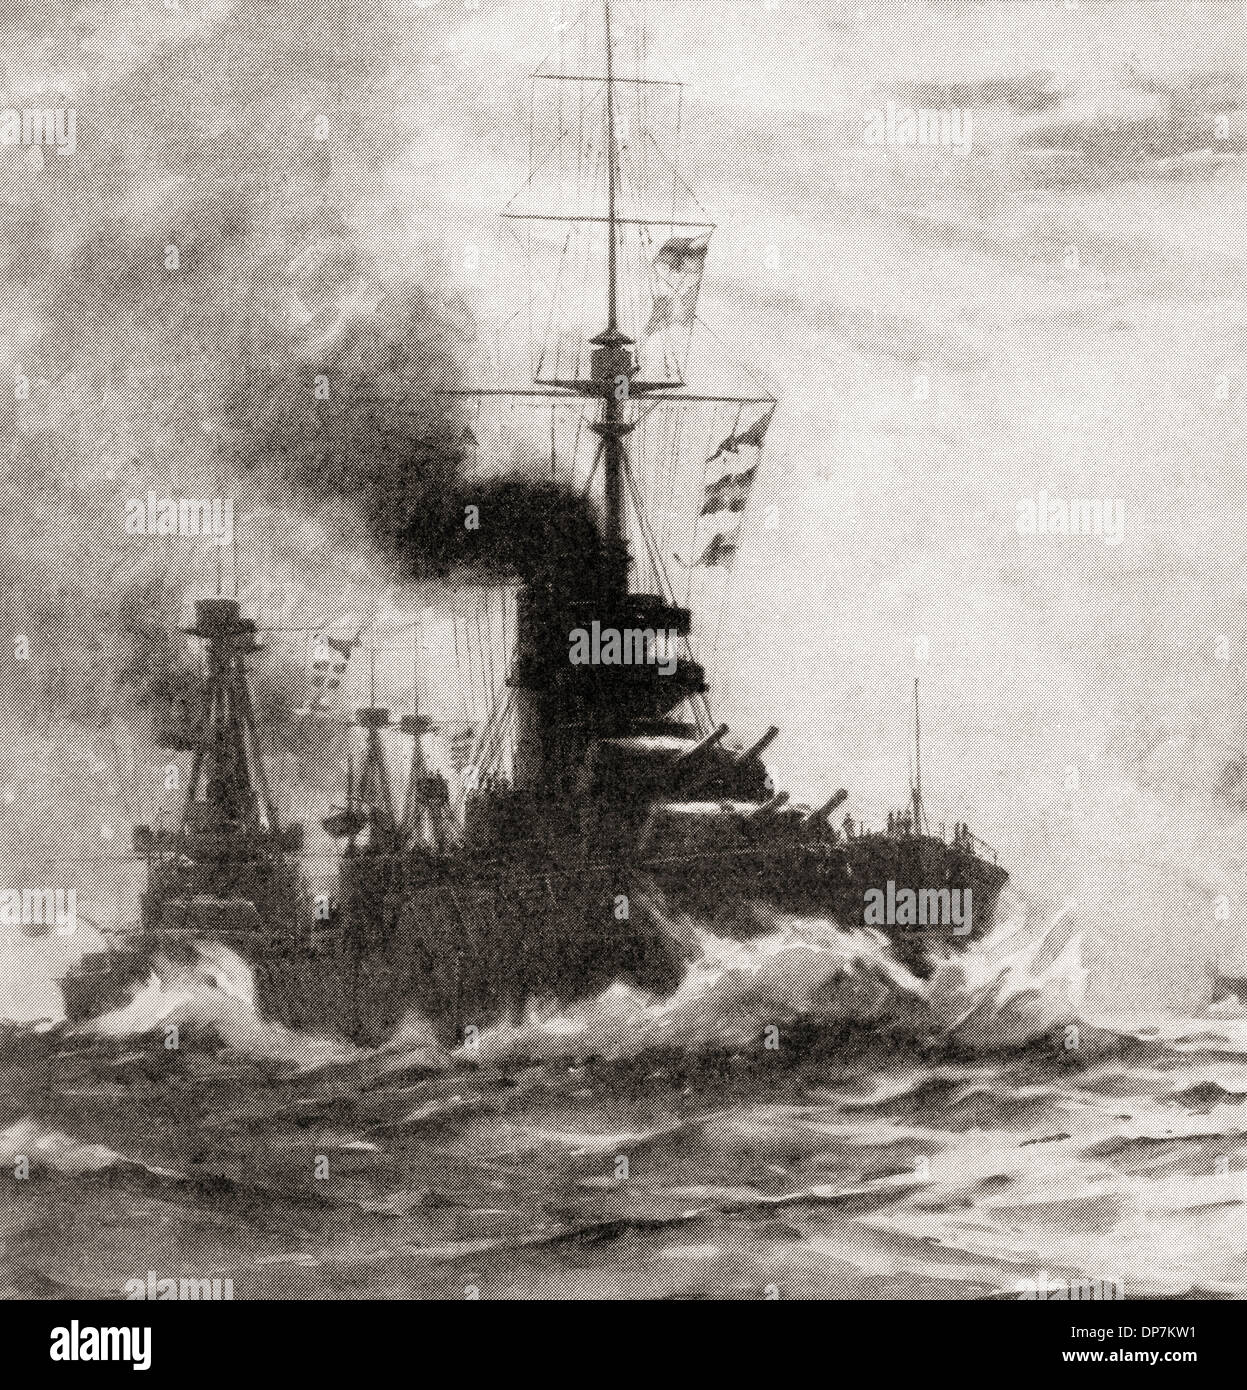 Die britischen Dreadnought HMS King George V während des ersten Weltkriegs. Aus dem Krieg illustrierte Album Deluxe veröffentlicht 1915. Stockfoto